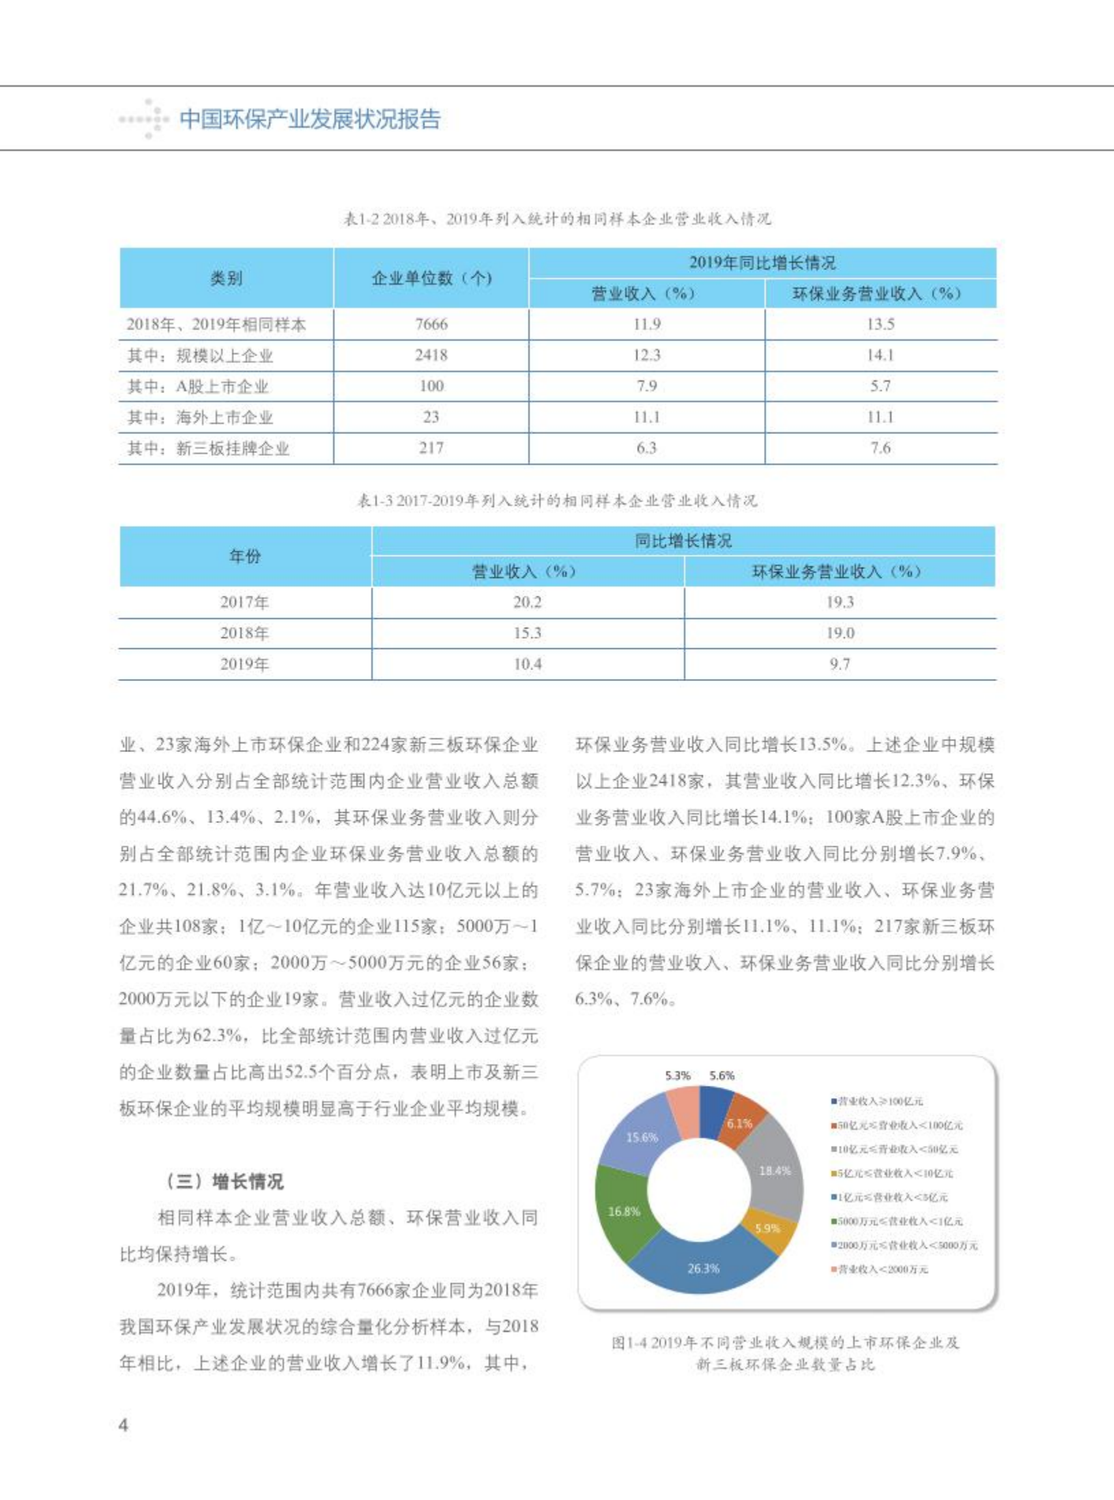 【2020】中国环保产业发展状况报告_05.png